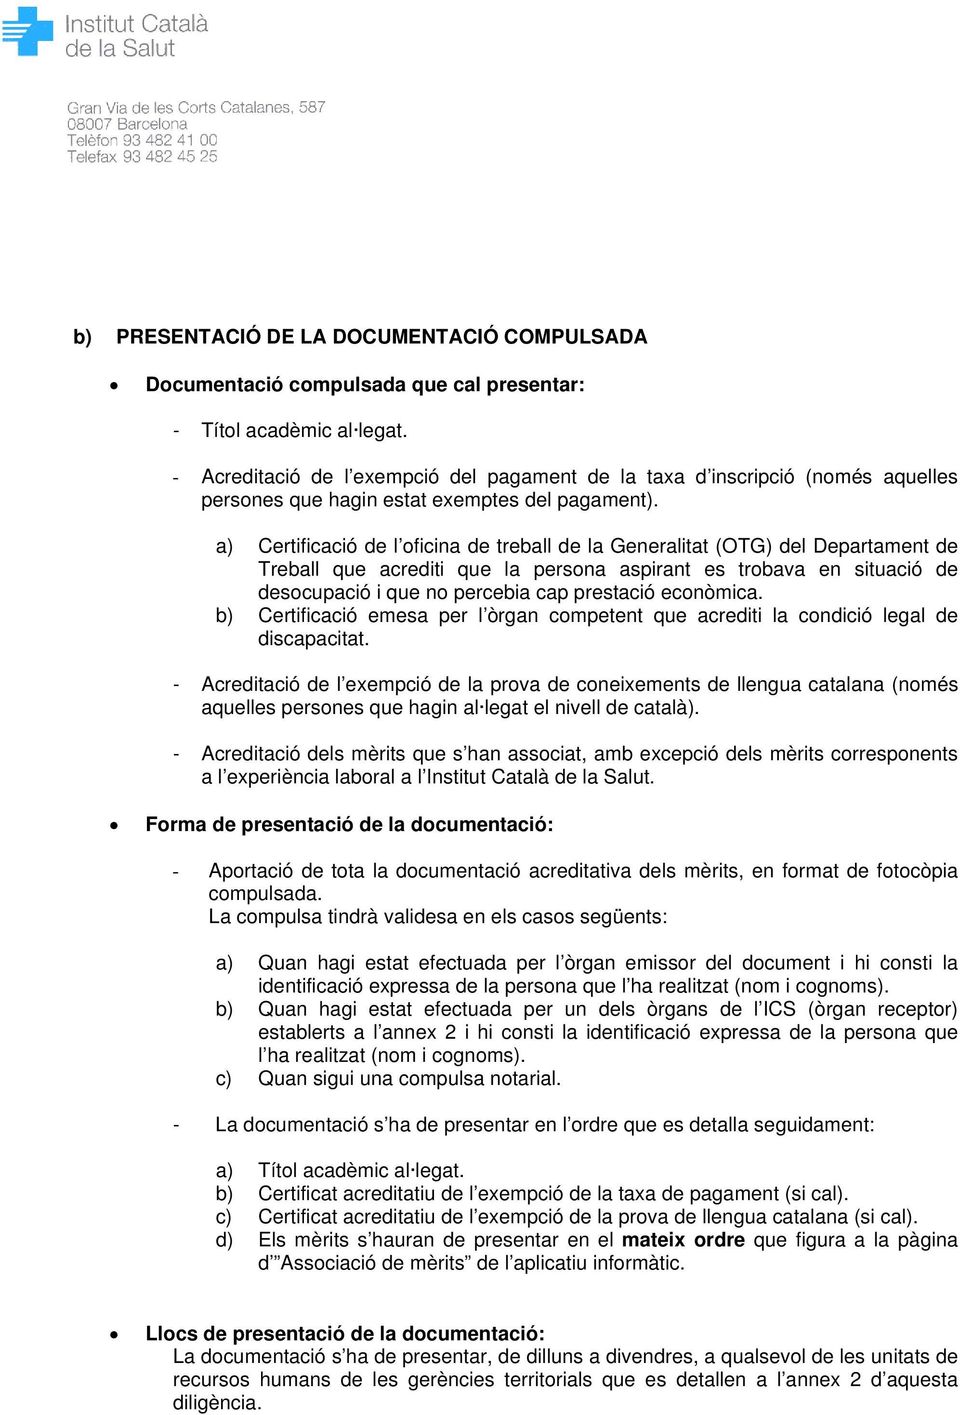 a) Certificació de l oficina de treball de la Generalitat (OTG) del Departament de Treball que acrediti que la persona aspirant es trobava en situació de desocupació i que no percebia cap prestació